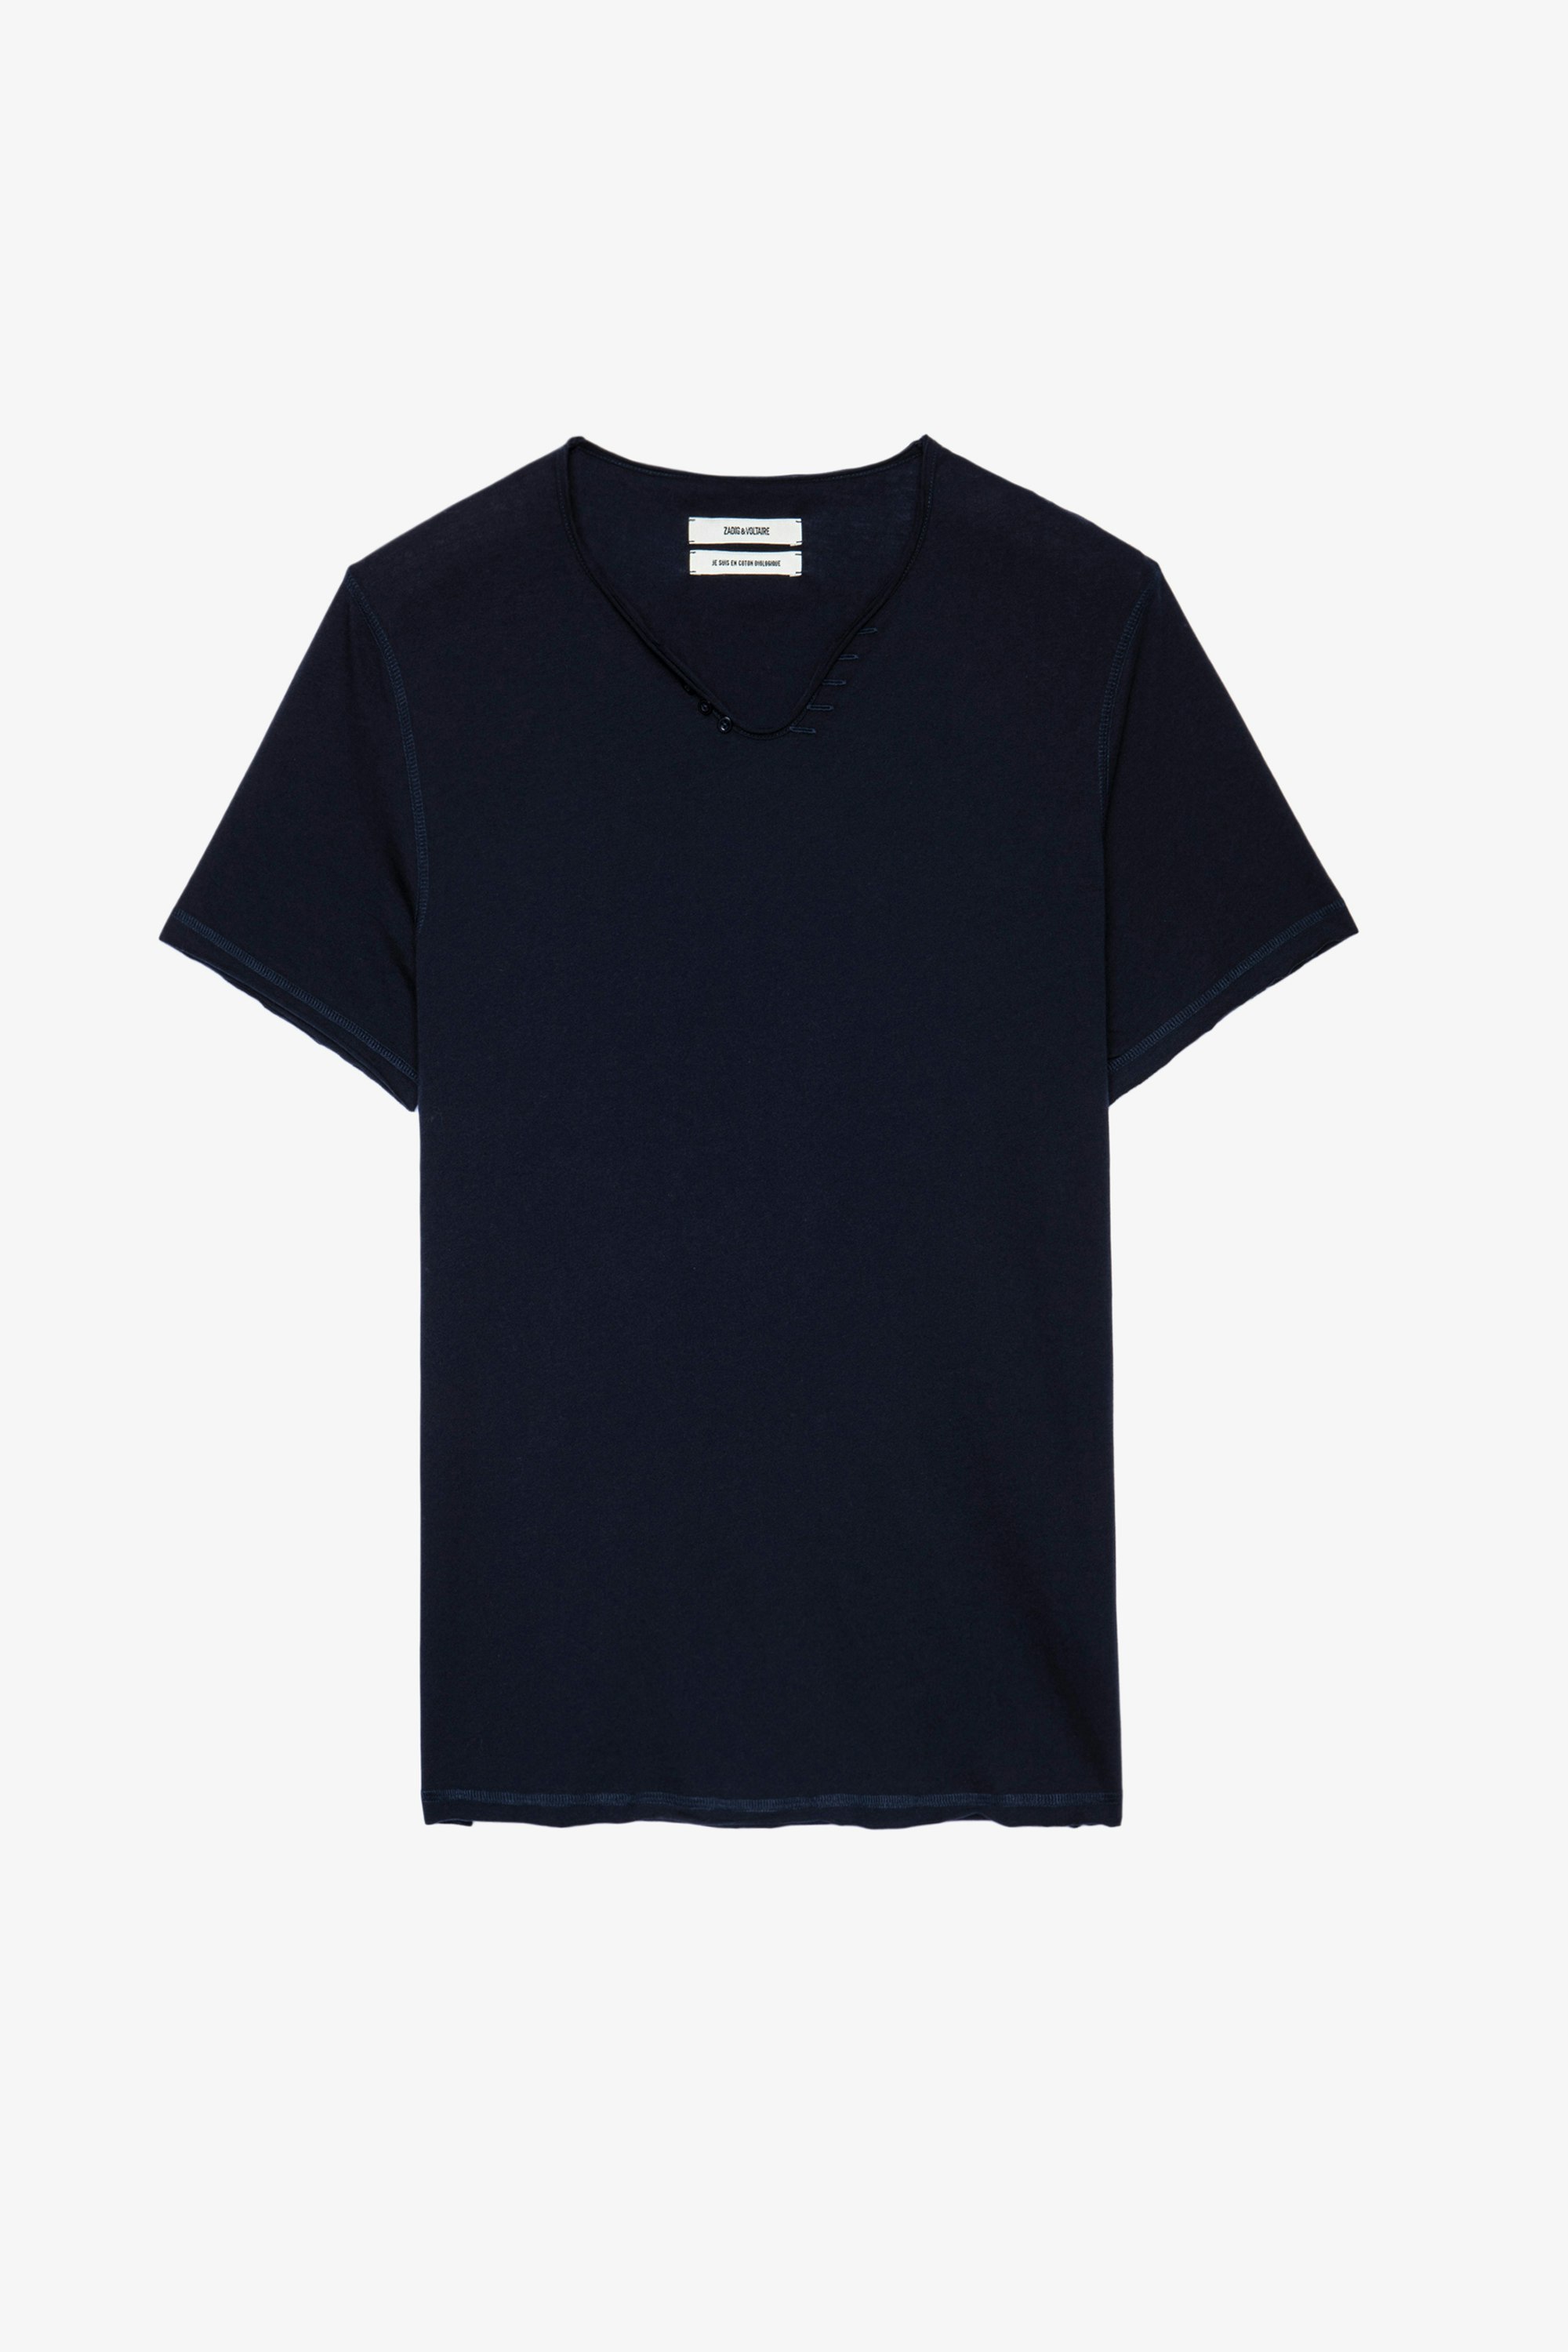 Henley-T-Shirt Monastir Blaues Herren-T-shirt aus Baumwolle mit Henley-Ausschnitt